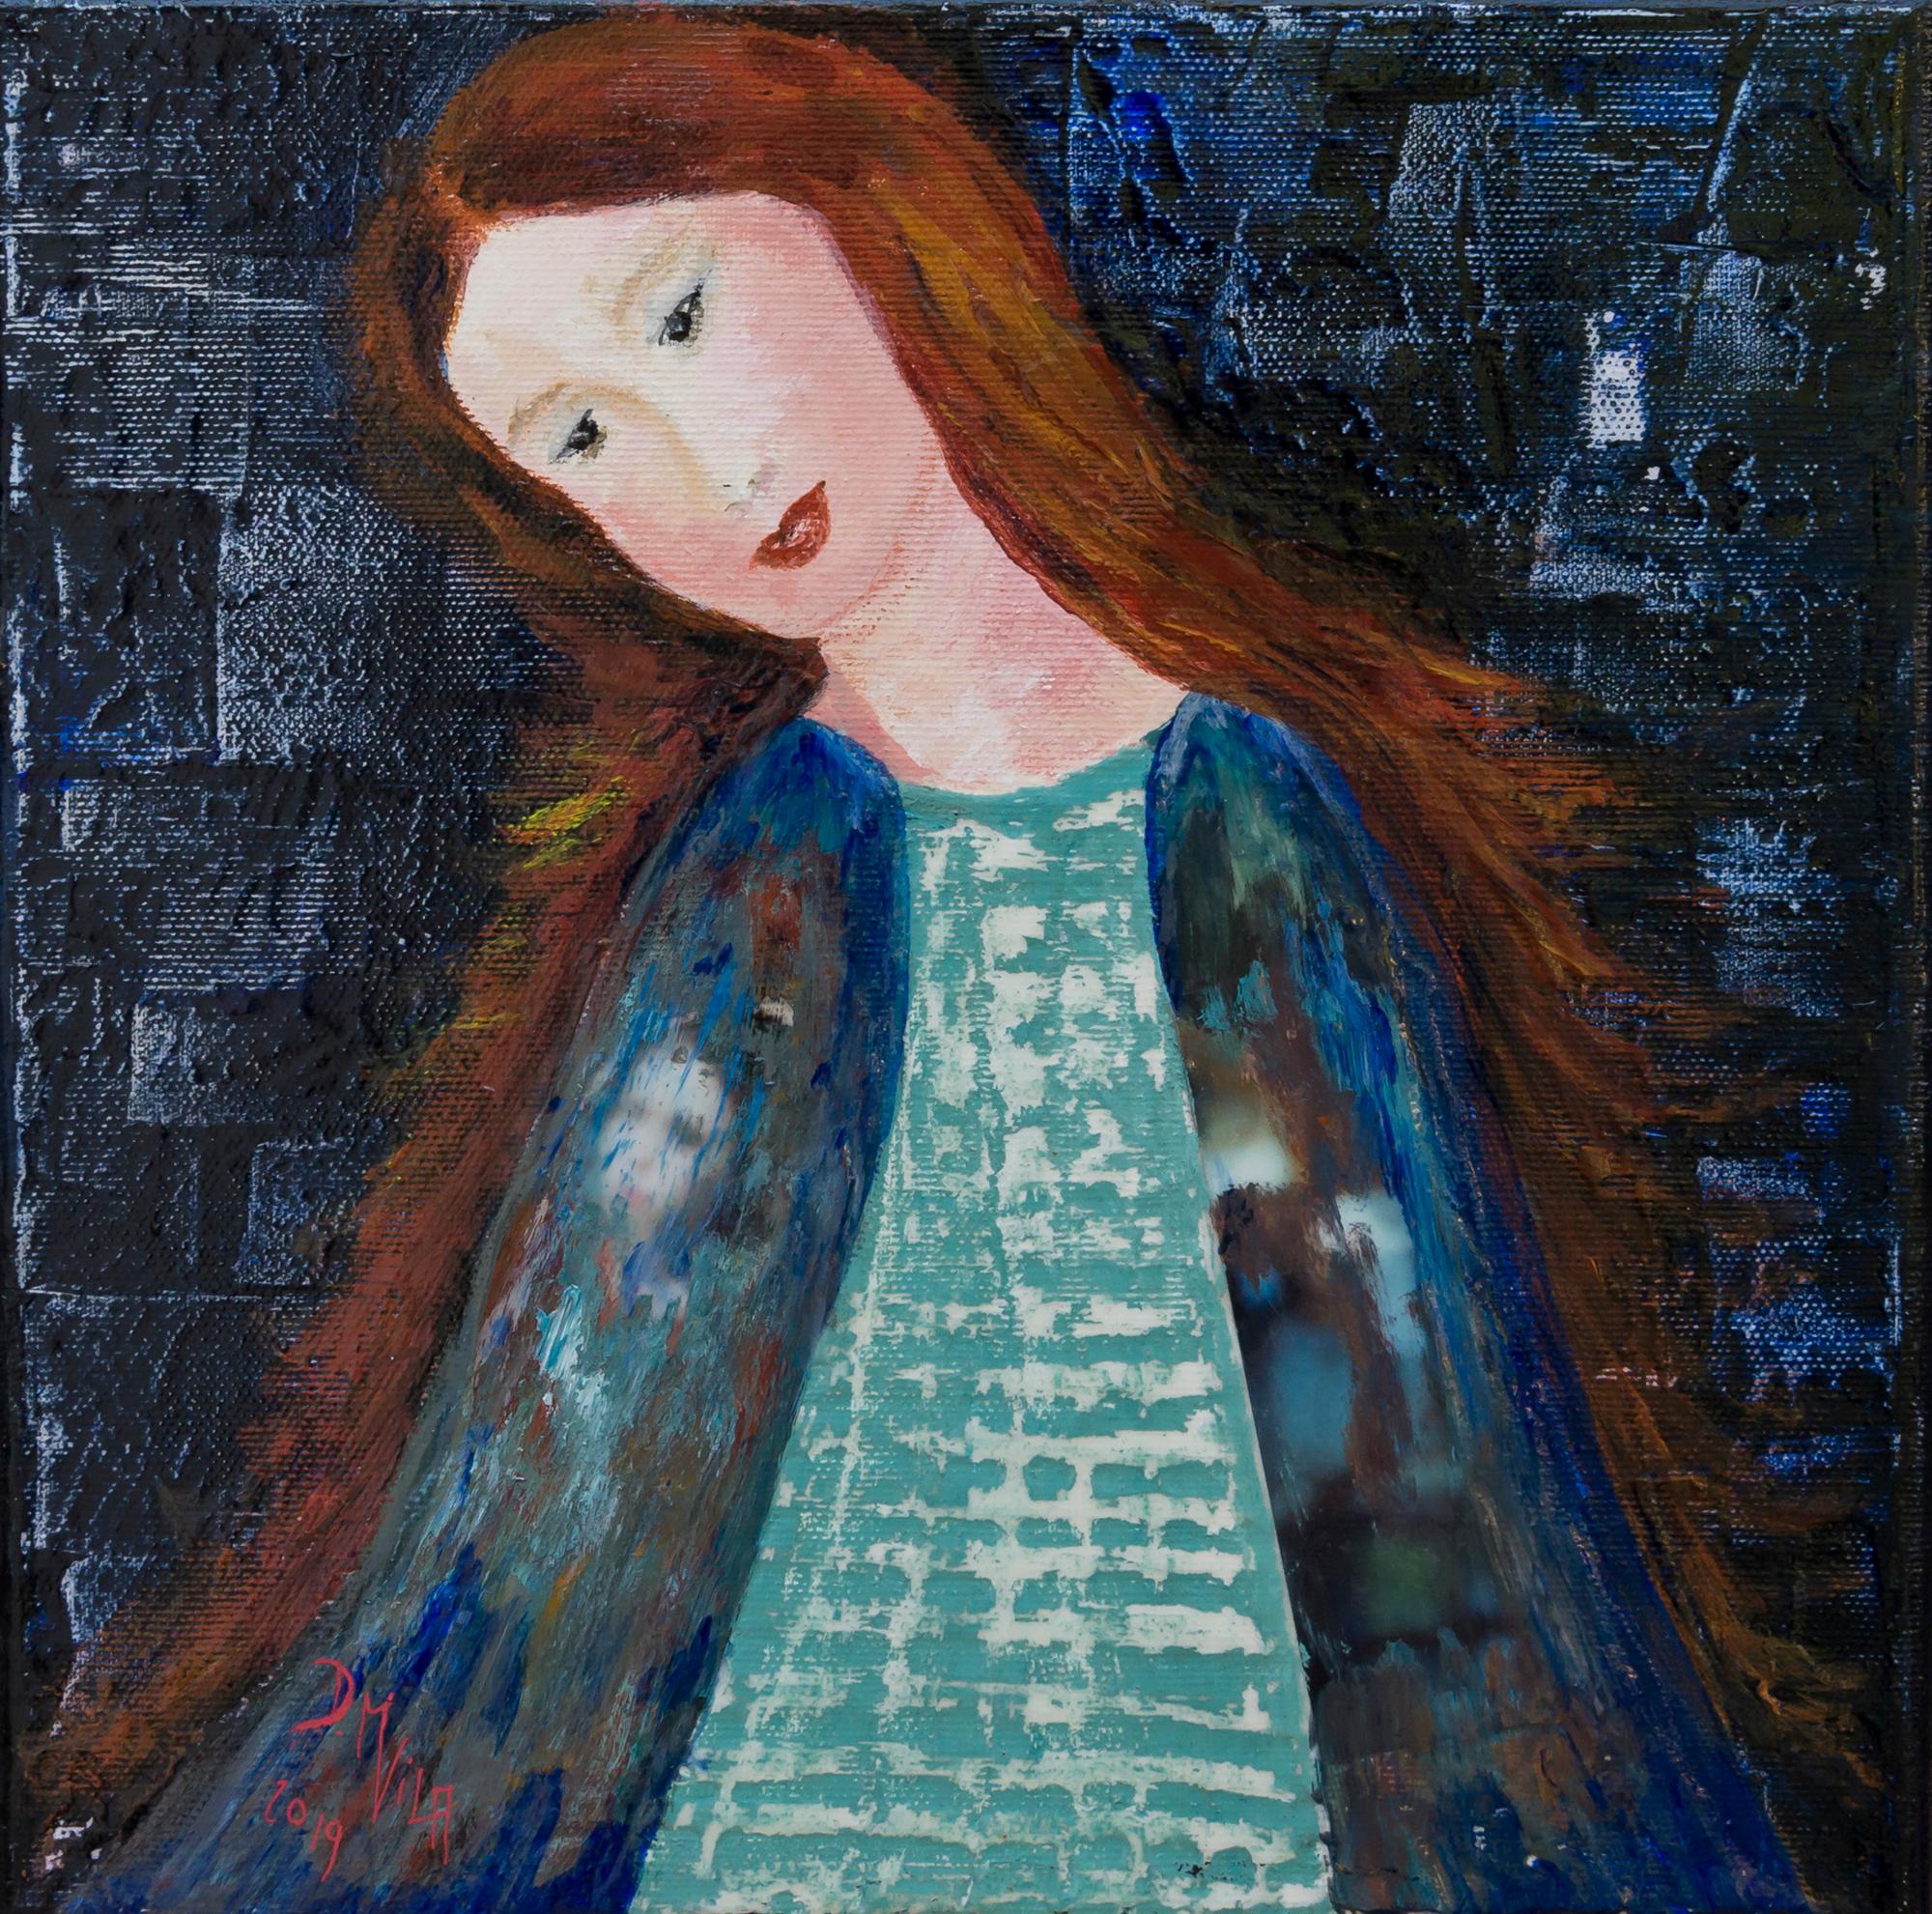 Acrylique sur toile

Danielle Maillet-Vila est une artiste française née en 1945 qui vit et travaille à Barbizon, en France. Elle s'est d'abord tournée vers l'industrie de la mode et a créé sa propre entreprise à l'âge de 22 ans, tout en continuant